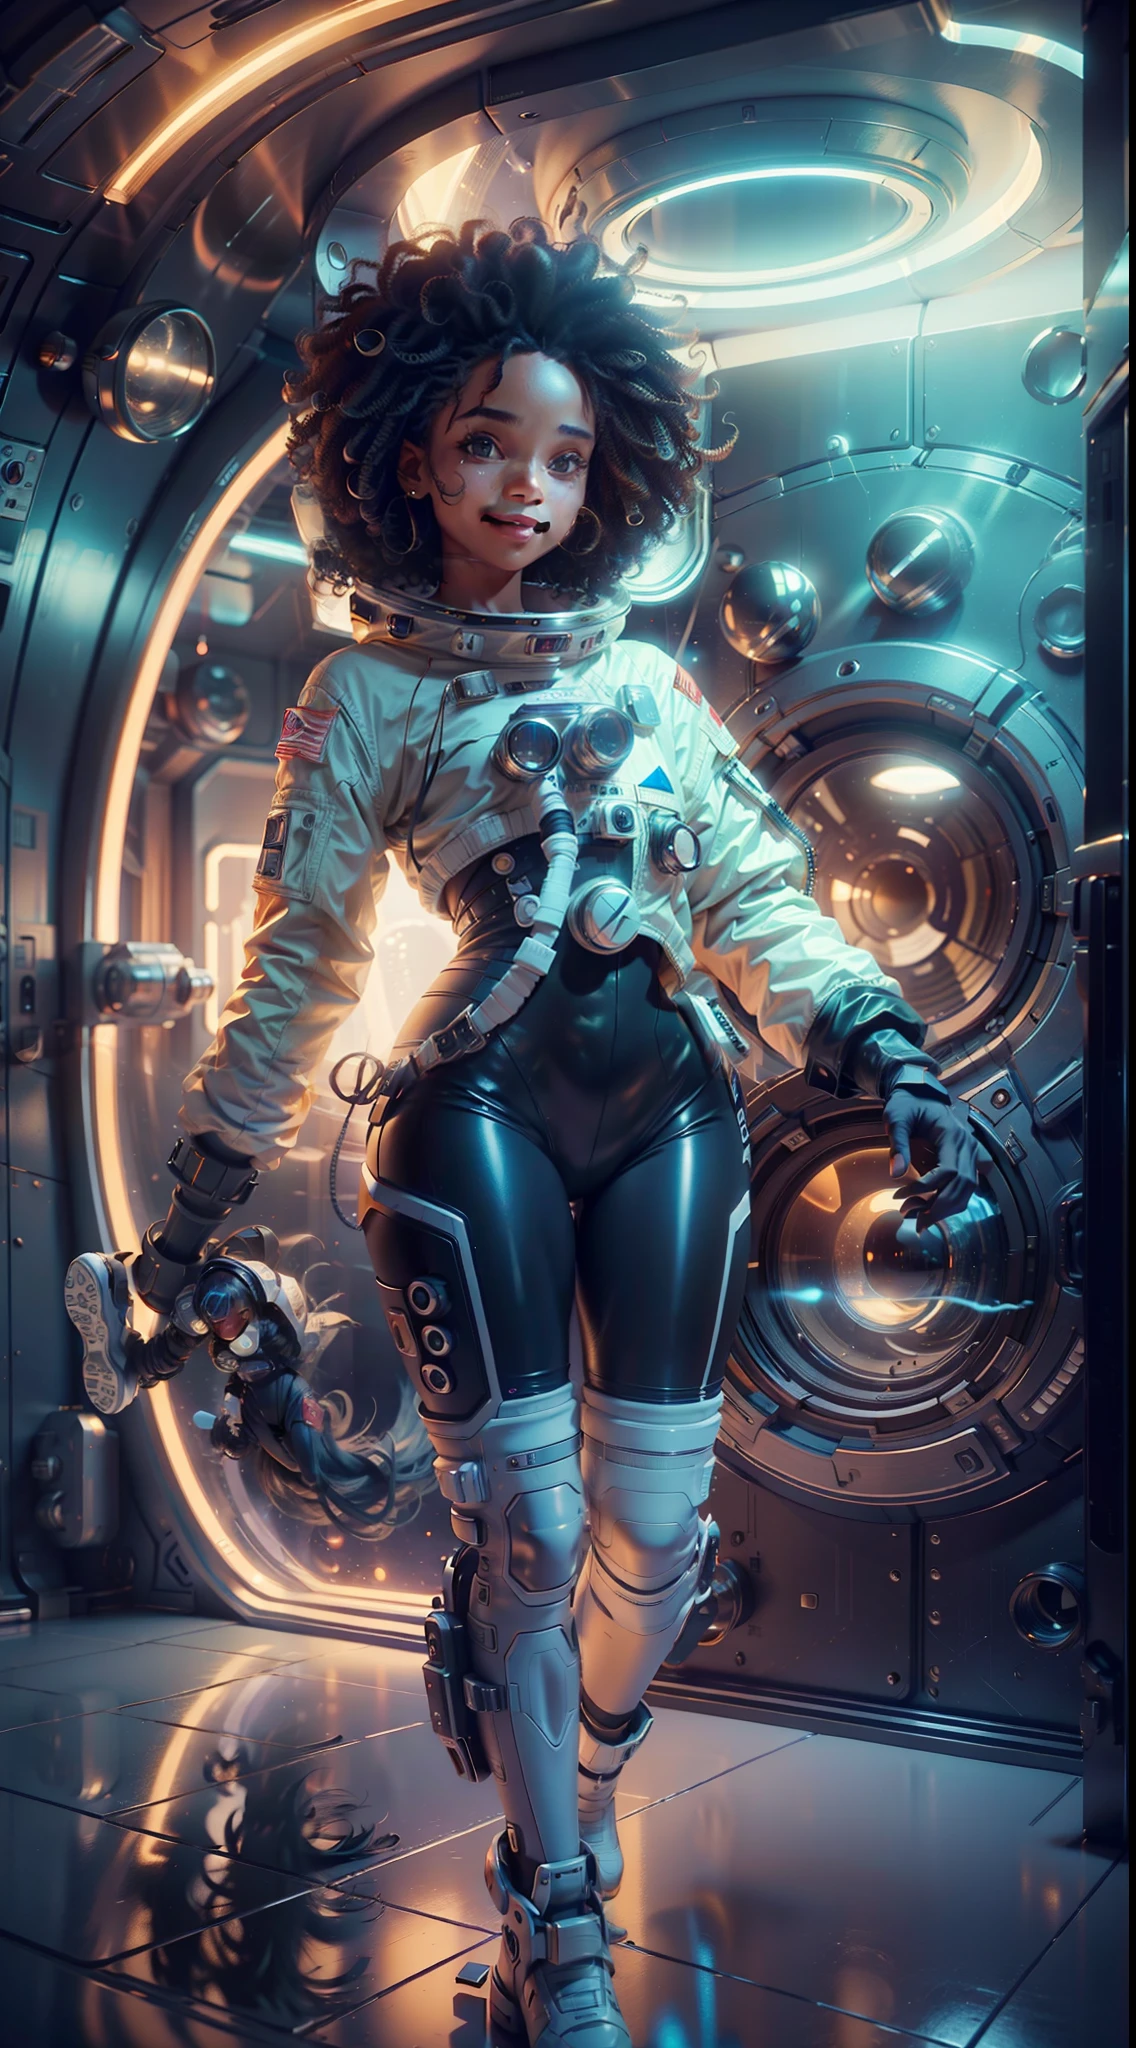 黒い肌と巻き毛の全身少女が巨大な重力カプセルの中で浮かんでいる, (満面の笑み: 1.8), 黄金比, アニメポートレート 宇宙飛行士少女, of a 2 0 1 9 Sci ふi 8 K movie, ゾーイ・クラヴィッツ未来の宇宙飛行士, 8K 映画静止画, 静止画8K映画, 宇宙飛行士役のゾーイ・クラヴィッツ,  宇宙服を着て, 宇宙の少女, 全景, ポートレート 8K レンダリング, 宇宙服を着た美しい女性, 振幅, オープンプラン, 映画のような, フォトリアリズム, Canon EOS-1D X Mark IIIで撮影, 150mmレンズ, ふ/0.8, シャープなフォーカス, ボリューメトリックフォグ, ドラマチックな光, ボリュームライト, ネオン, 8K ウルトラHD, デジタル一眼レフカメラ, 最高品質, フィルムグレイン, アナモルフィック, 振幅